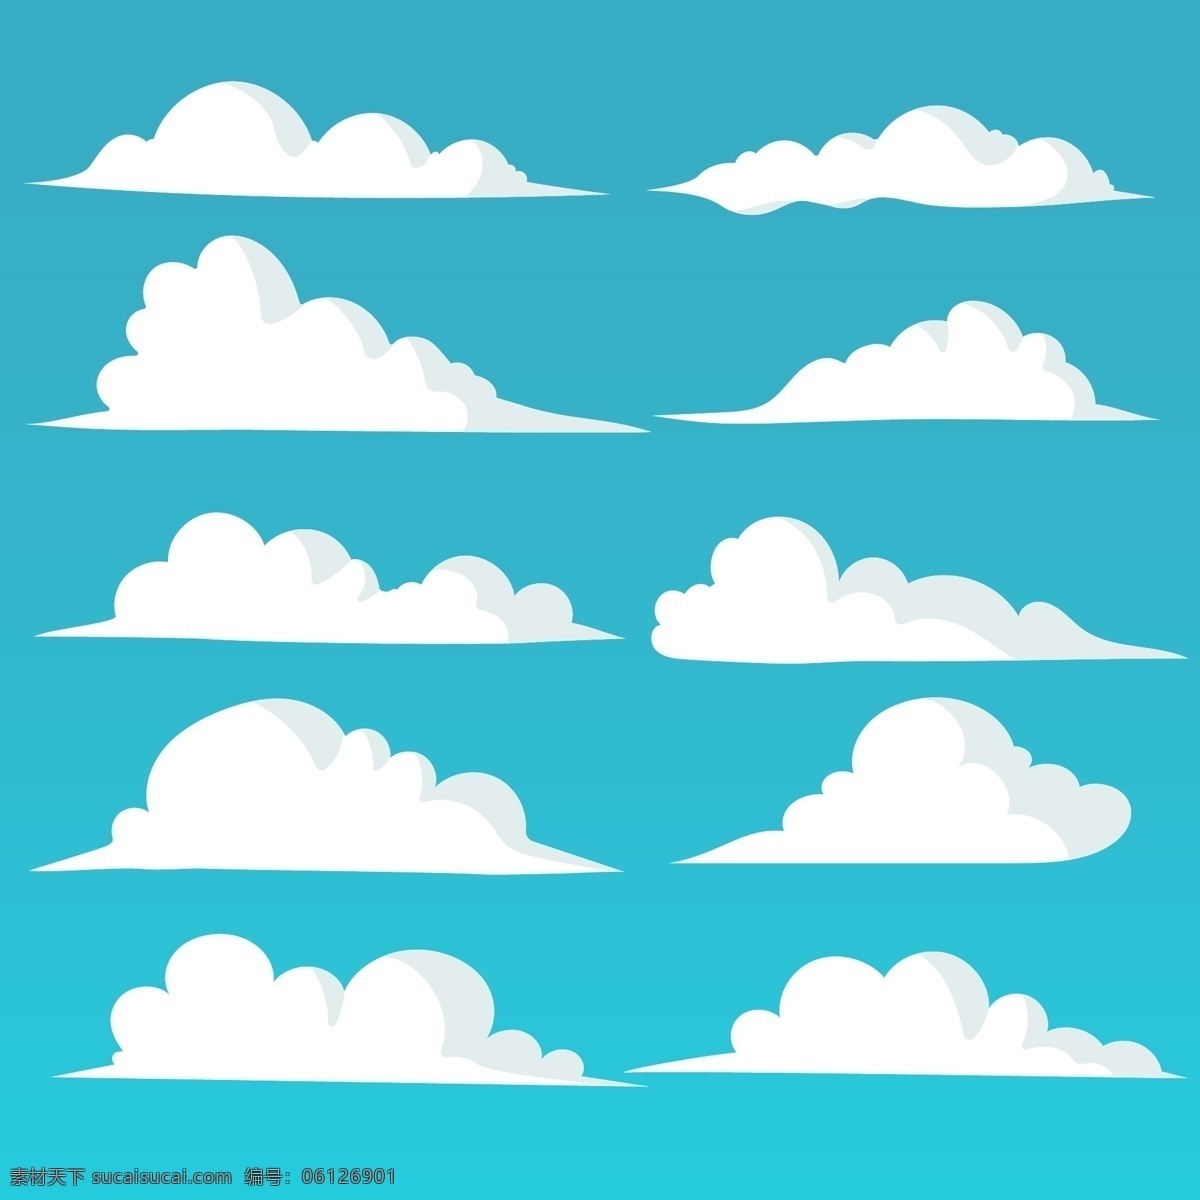 矢量白云 白云 卡通白云 蓝天白云 矢量 云朵 云层 矢量素材 卡通